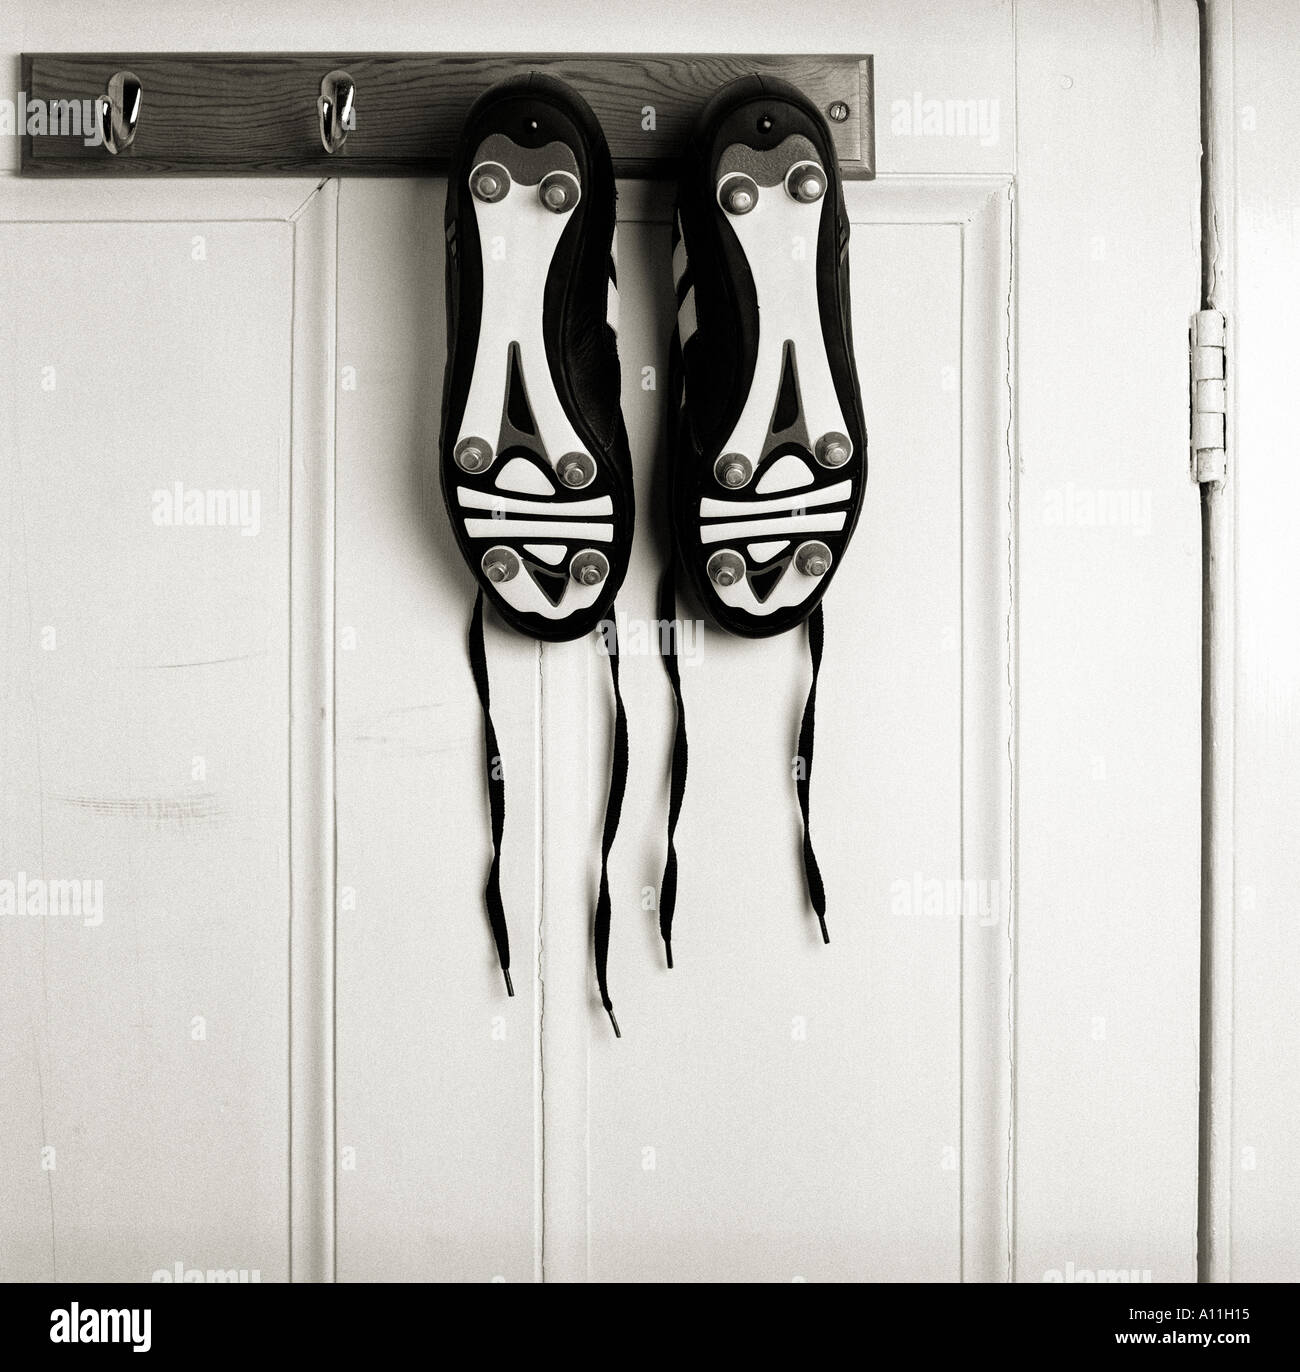 Une paire de chaussures de football adidas predator suspendu à une patère  Photo Stock - Alamy